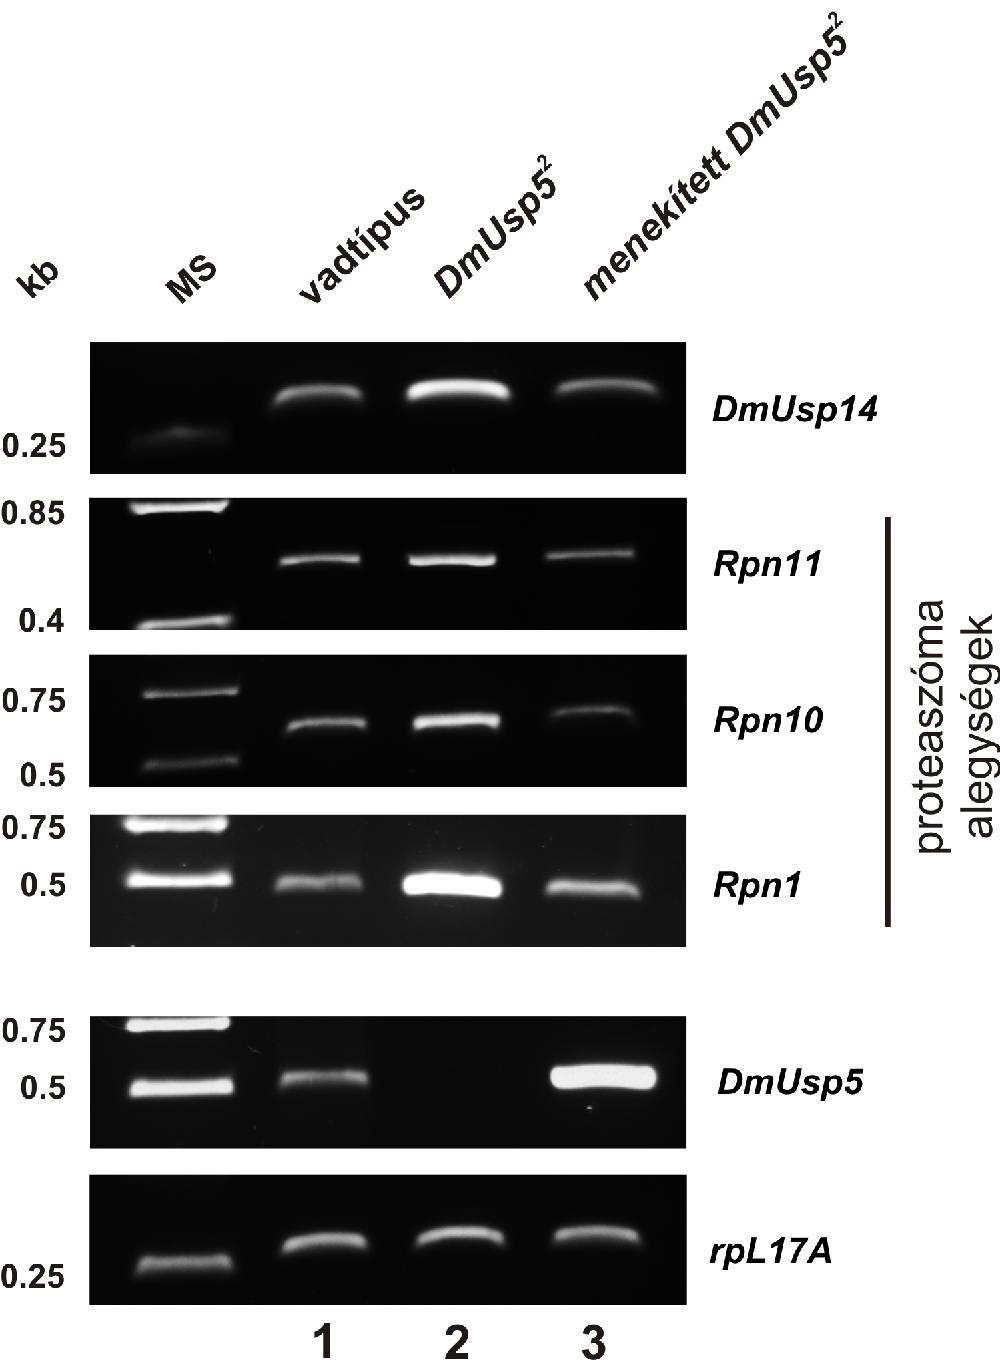 létezik-e Drosophilában. A kérdést megválaszolandó a DmUsp5 mutánsokban megvizsgáltuk az Ubp6 Drosophila ortológjának expresszióját.